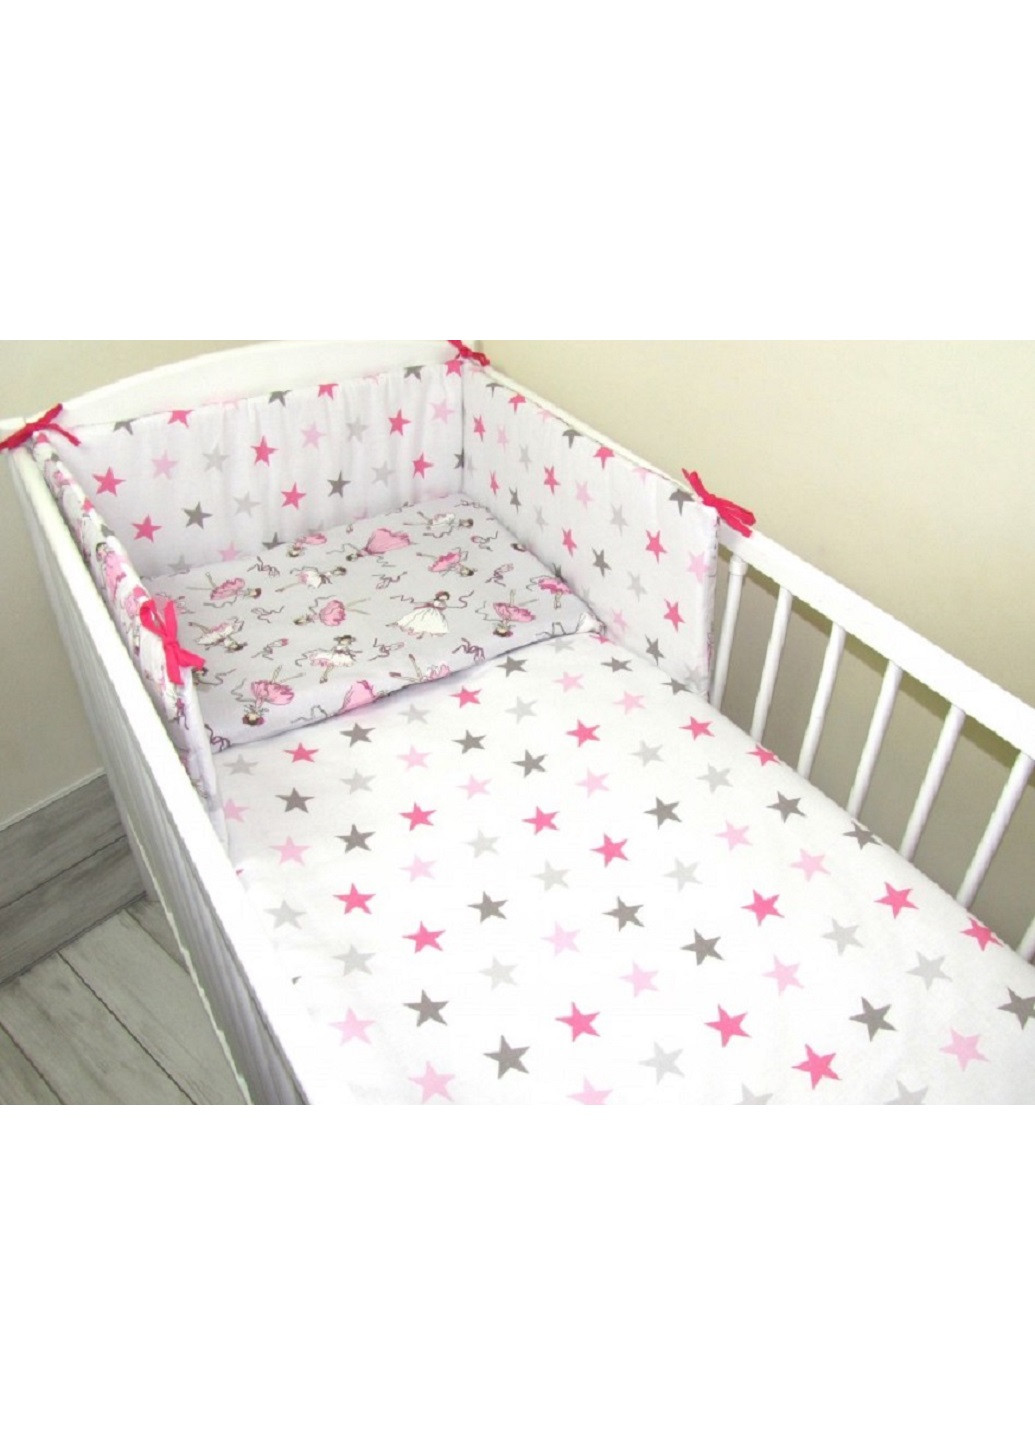 Комплект в детскую кроватку кровать люльку набор бортики защита по всему периметру постельное белье ручной работы (28540-Нов) Unbranded (253162441)